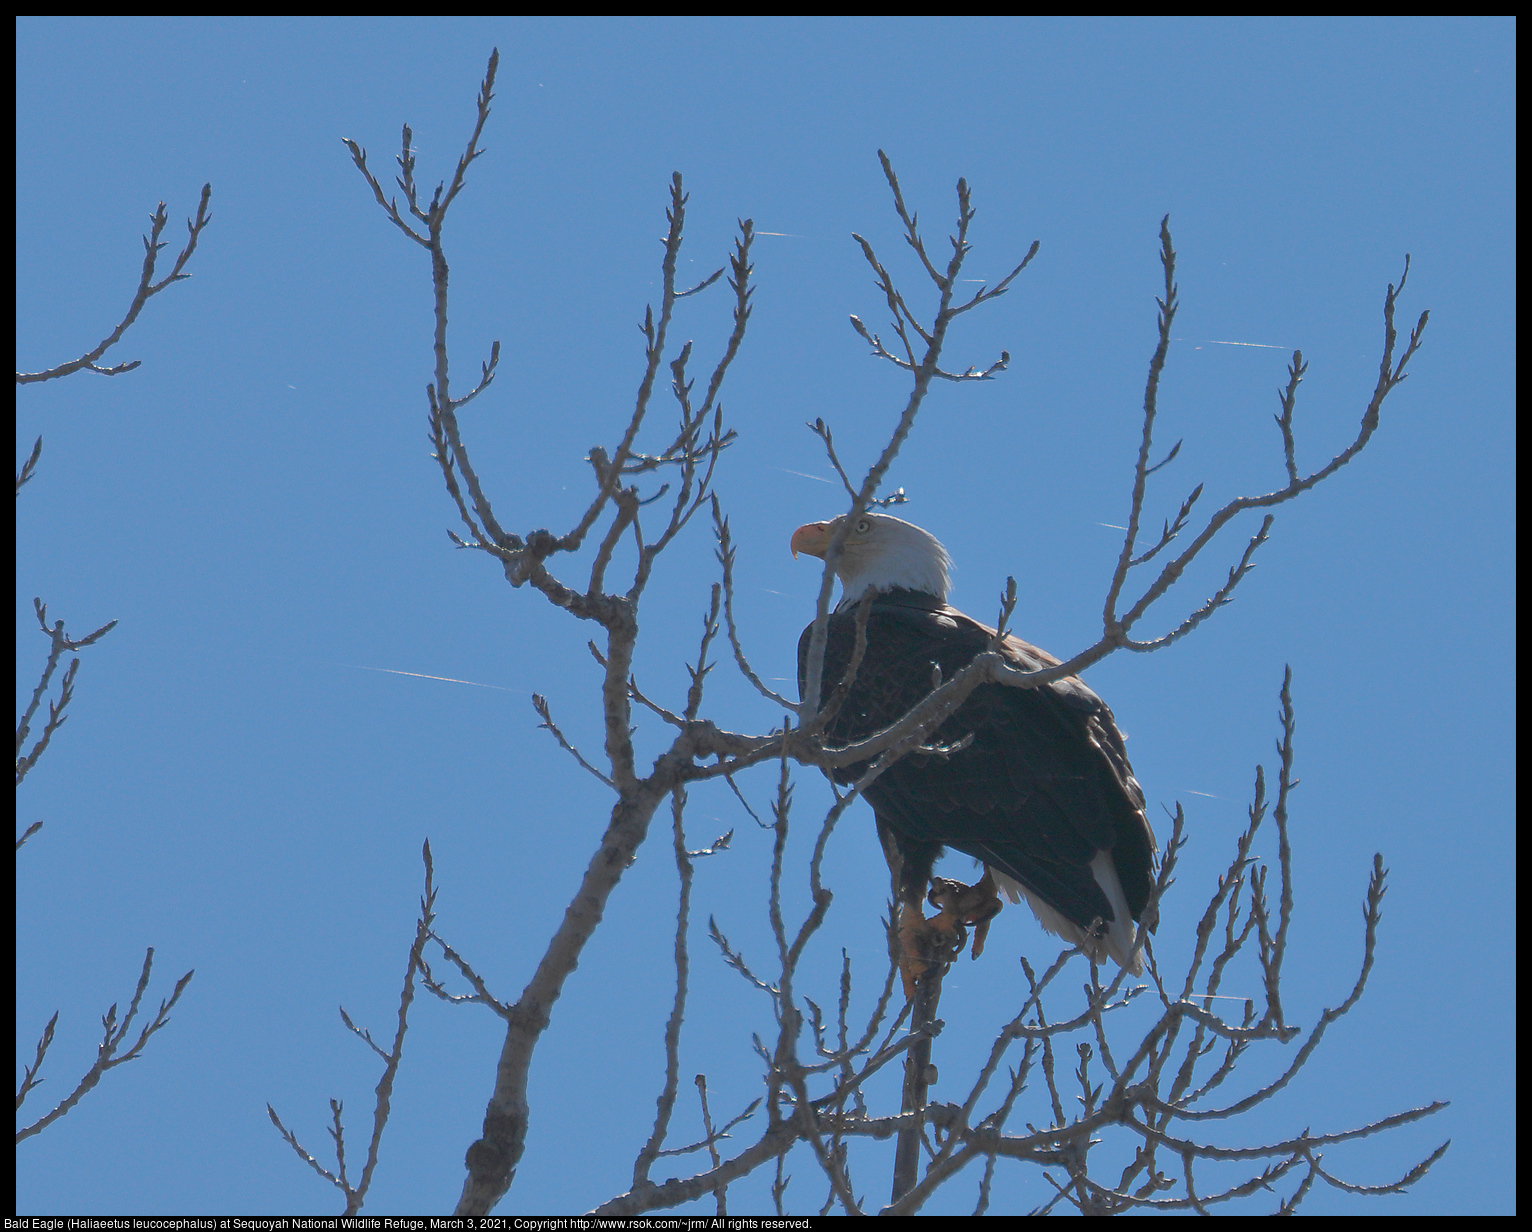 Bald Eagle (Haliaeetus leucocephalus) at Sequoyah National Wildlife Refuge, March 3, 2021